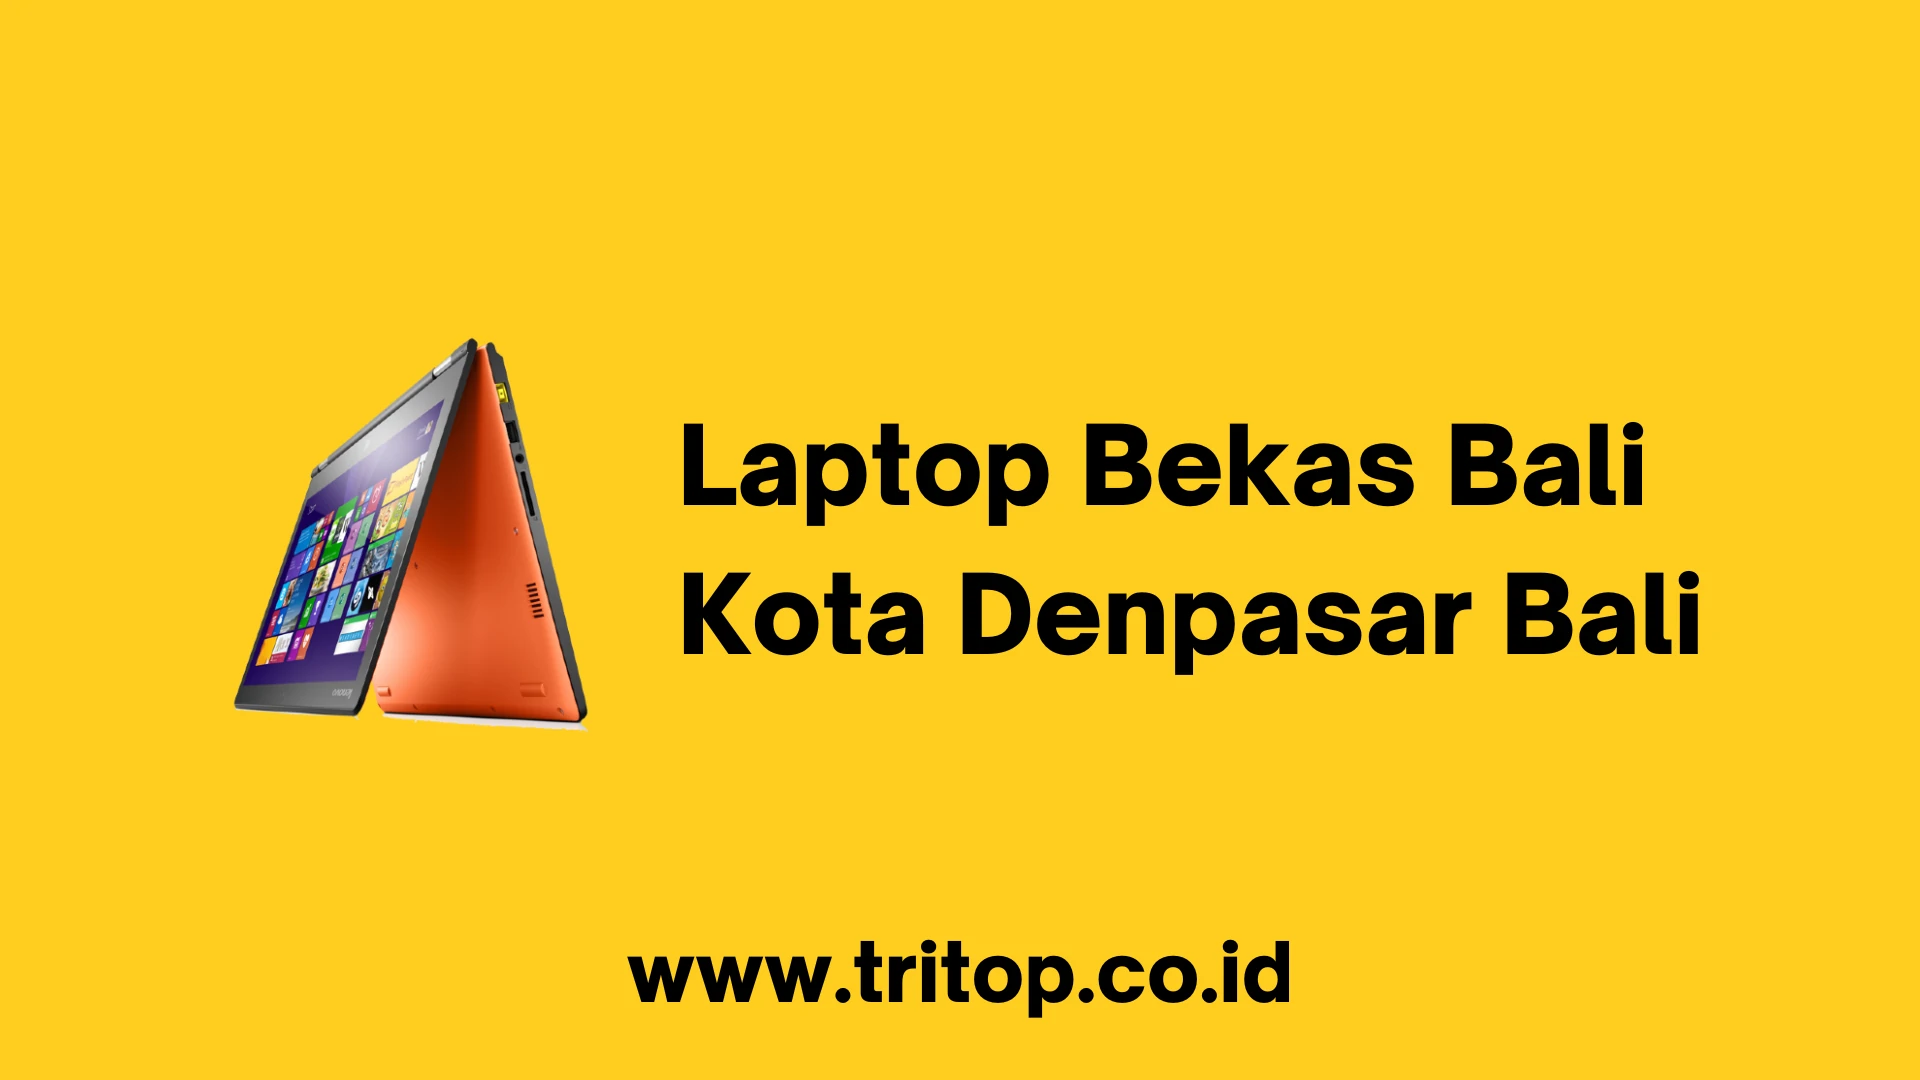 Laptop Bekas Bali Kota Denpasar Bali